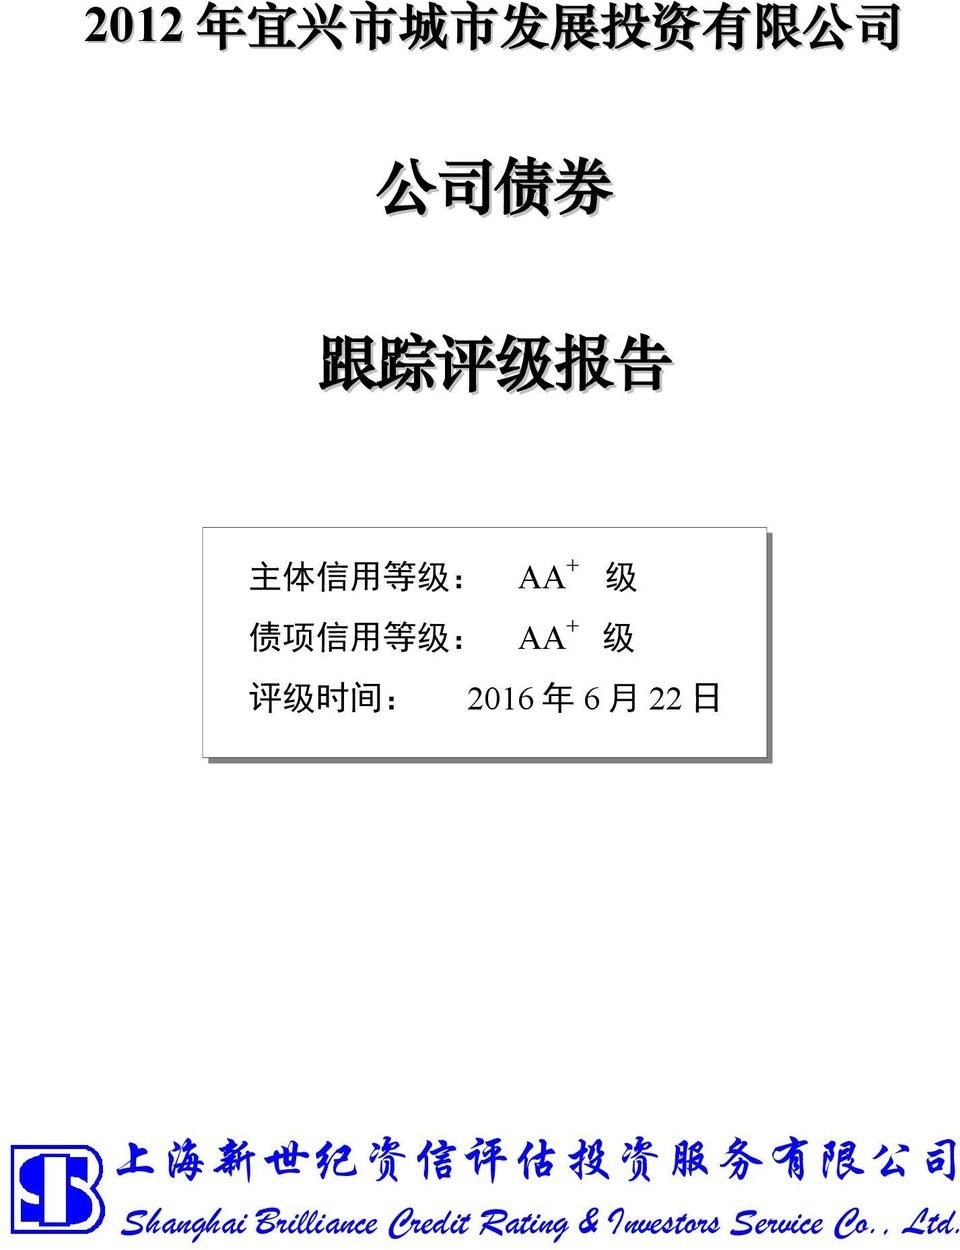 年 6 月 22 日 上 海 新 世 纪 资 信 评 估 投 资 服 务 有 限 公 司 Shanghai